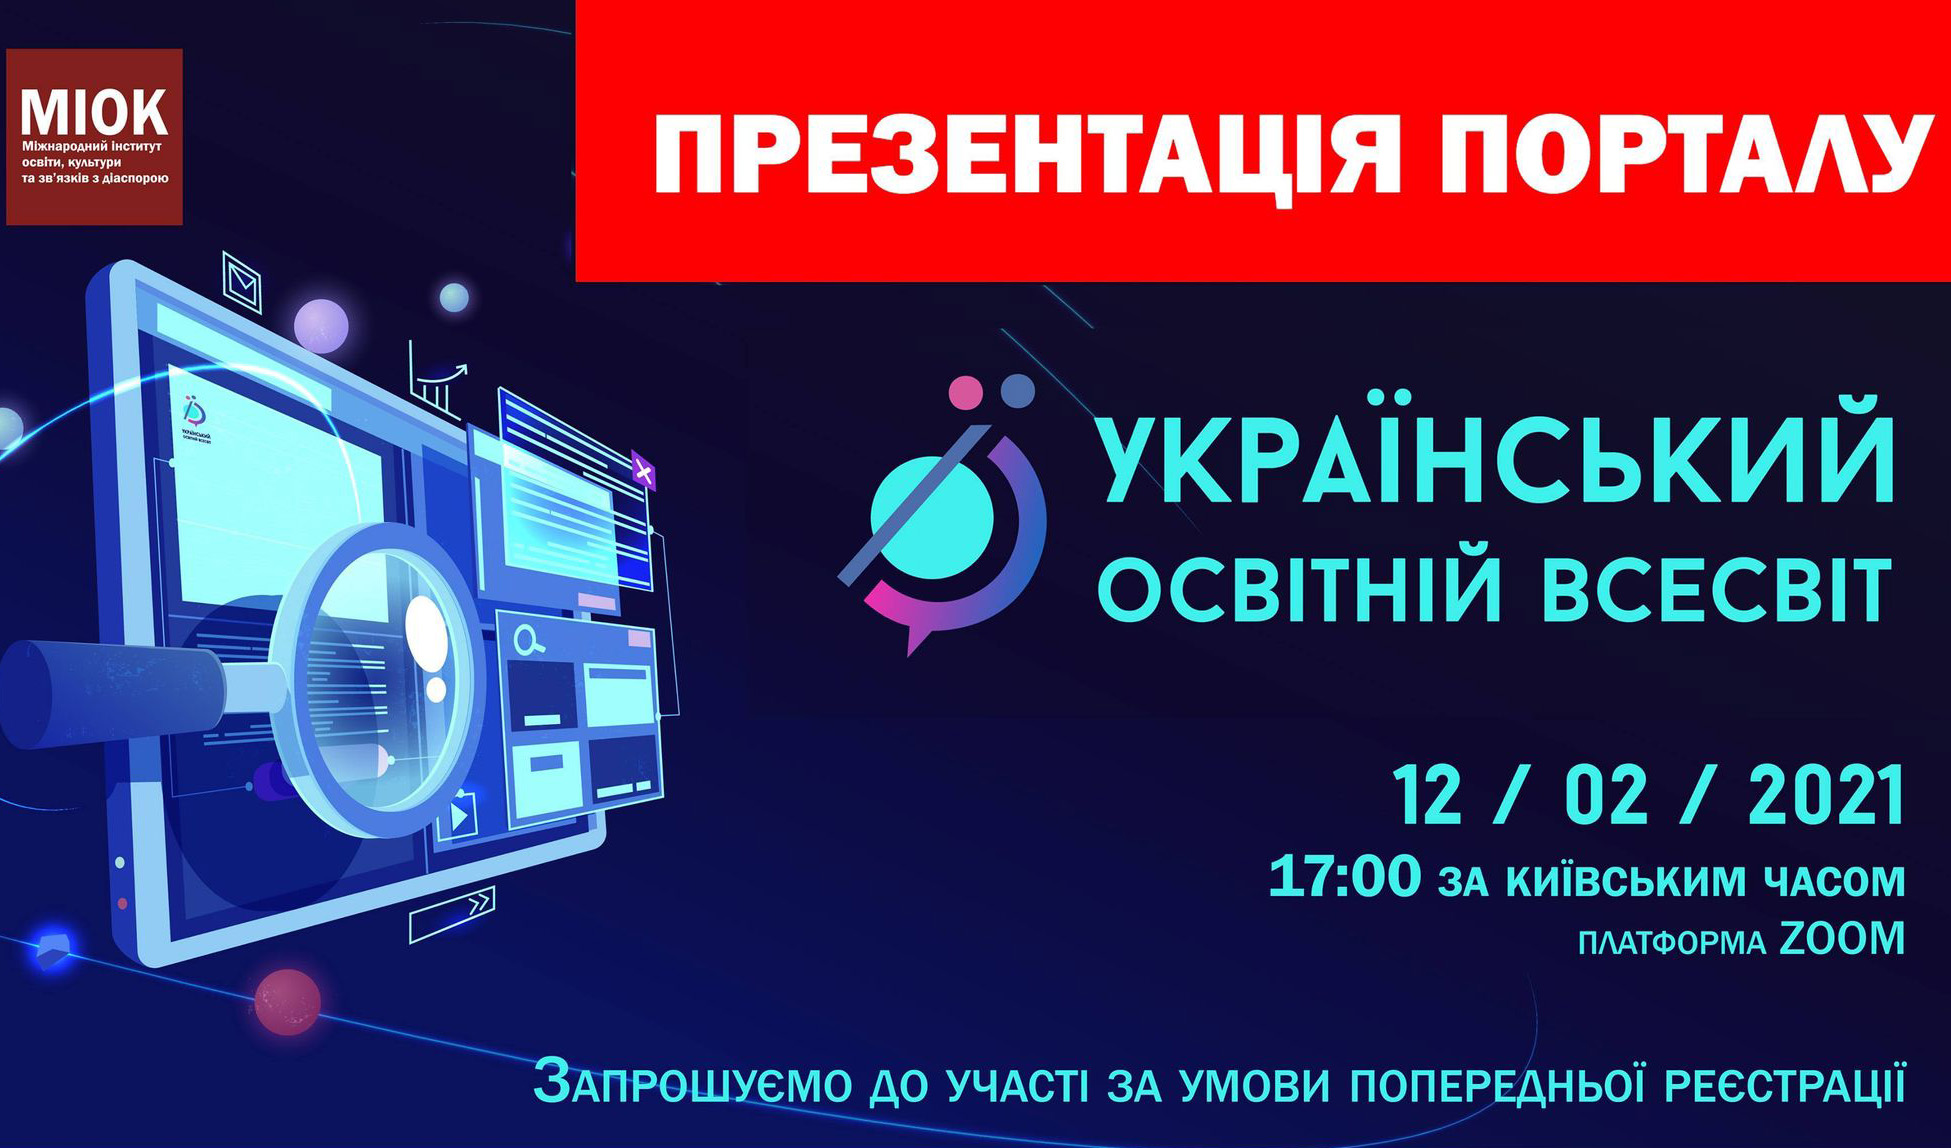 Афіша презентації порталу «Український освітній всесвіт»